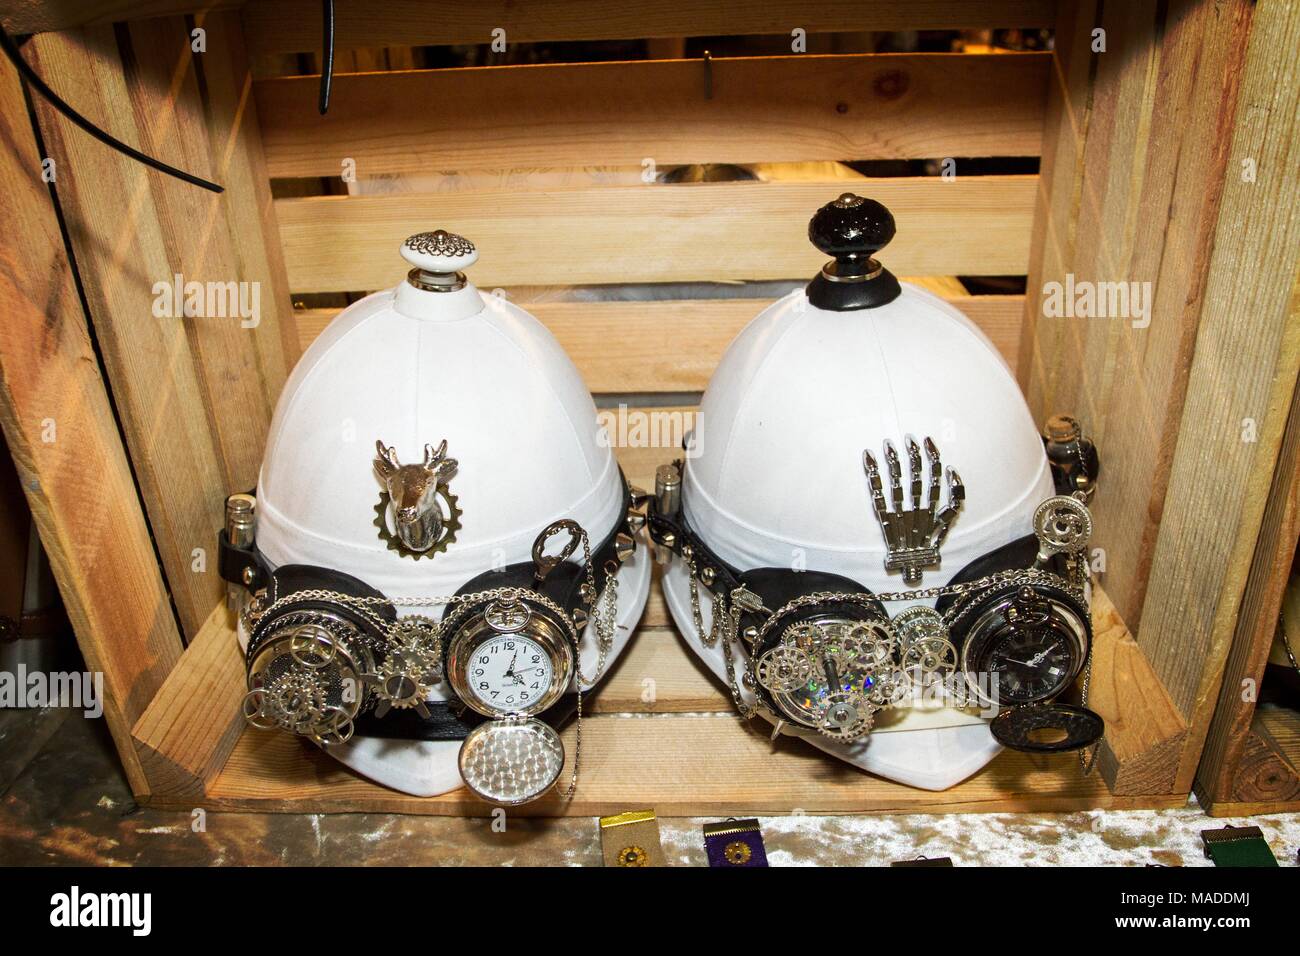 Lunettes casquettes Casques casque colonial spyglas lunettes spy glass collection hat chapeaux watch horloge mode africaine Afrique cuir steampunk goth watch Banque D'Images